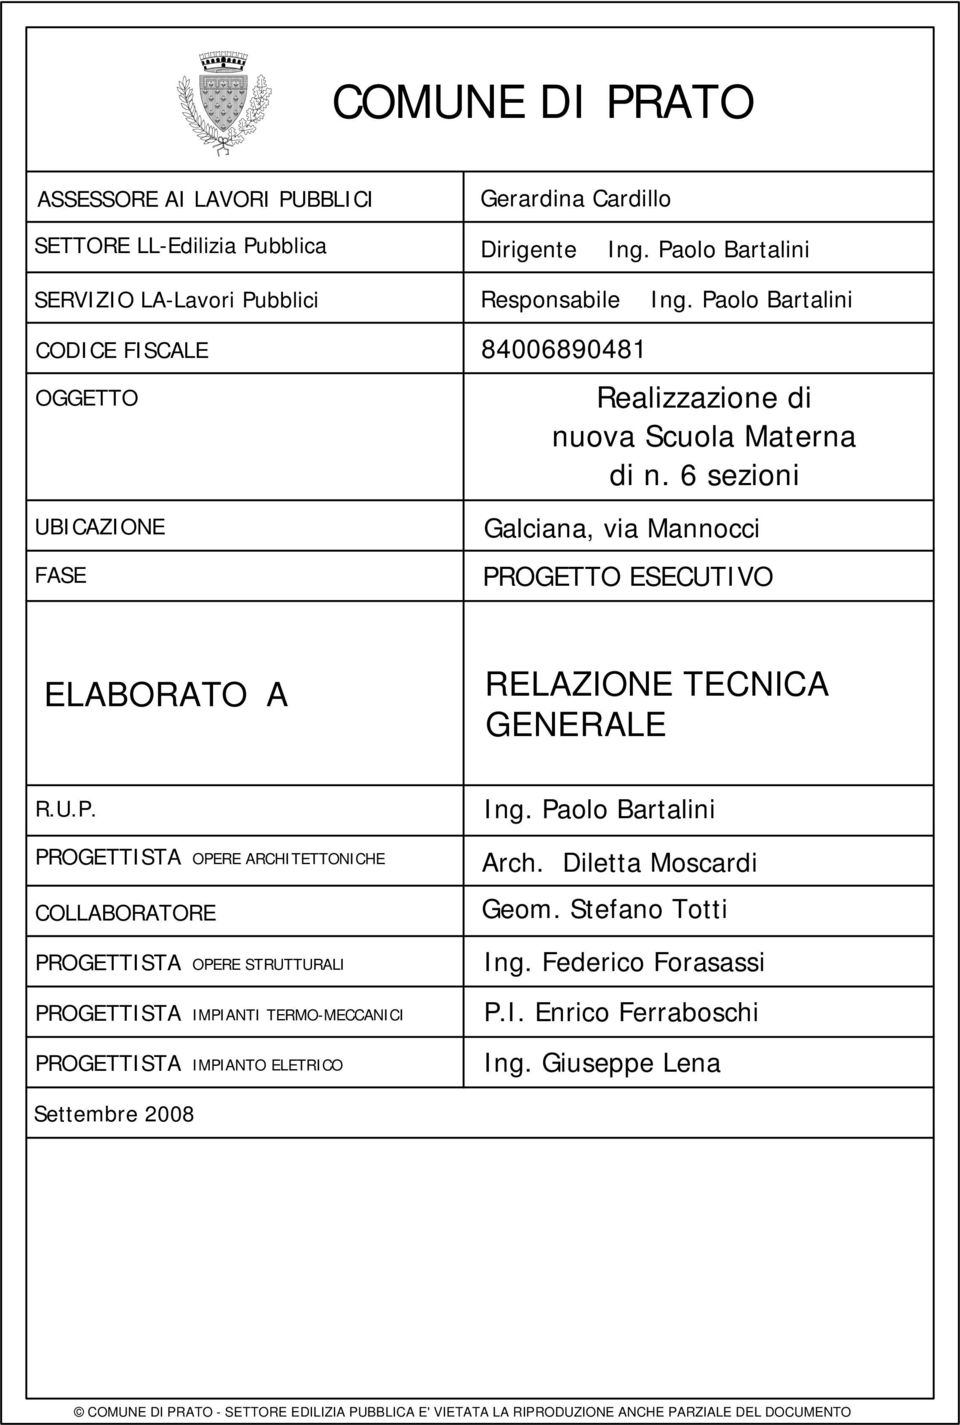 6 sezioni Galciana, via Mannocci PROGETTO ESECUTIVO ELABORATO A RELAZIONE TECNICA GENERALE R.U.P. COLLABORATORE OPERE ARCHITETTONICHE Arch. Diletta Moscardi Geom.